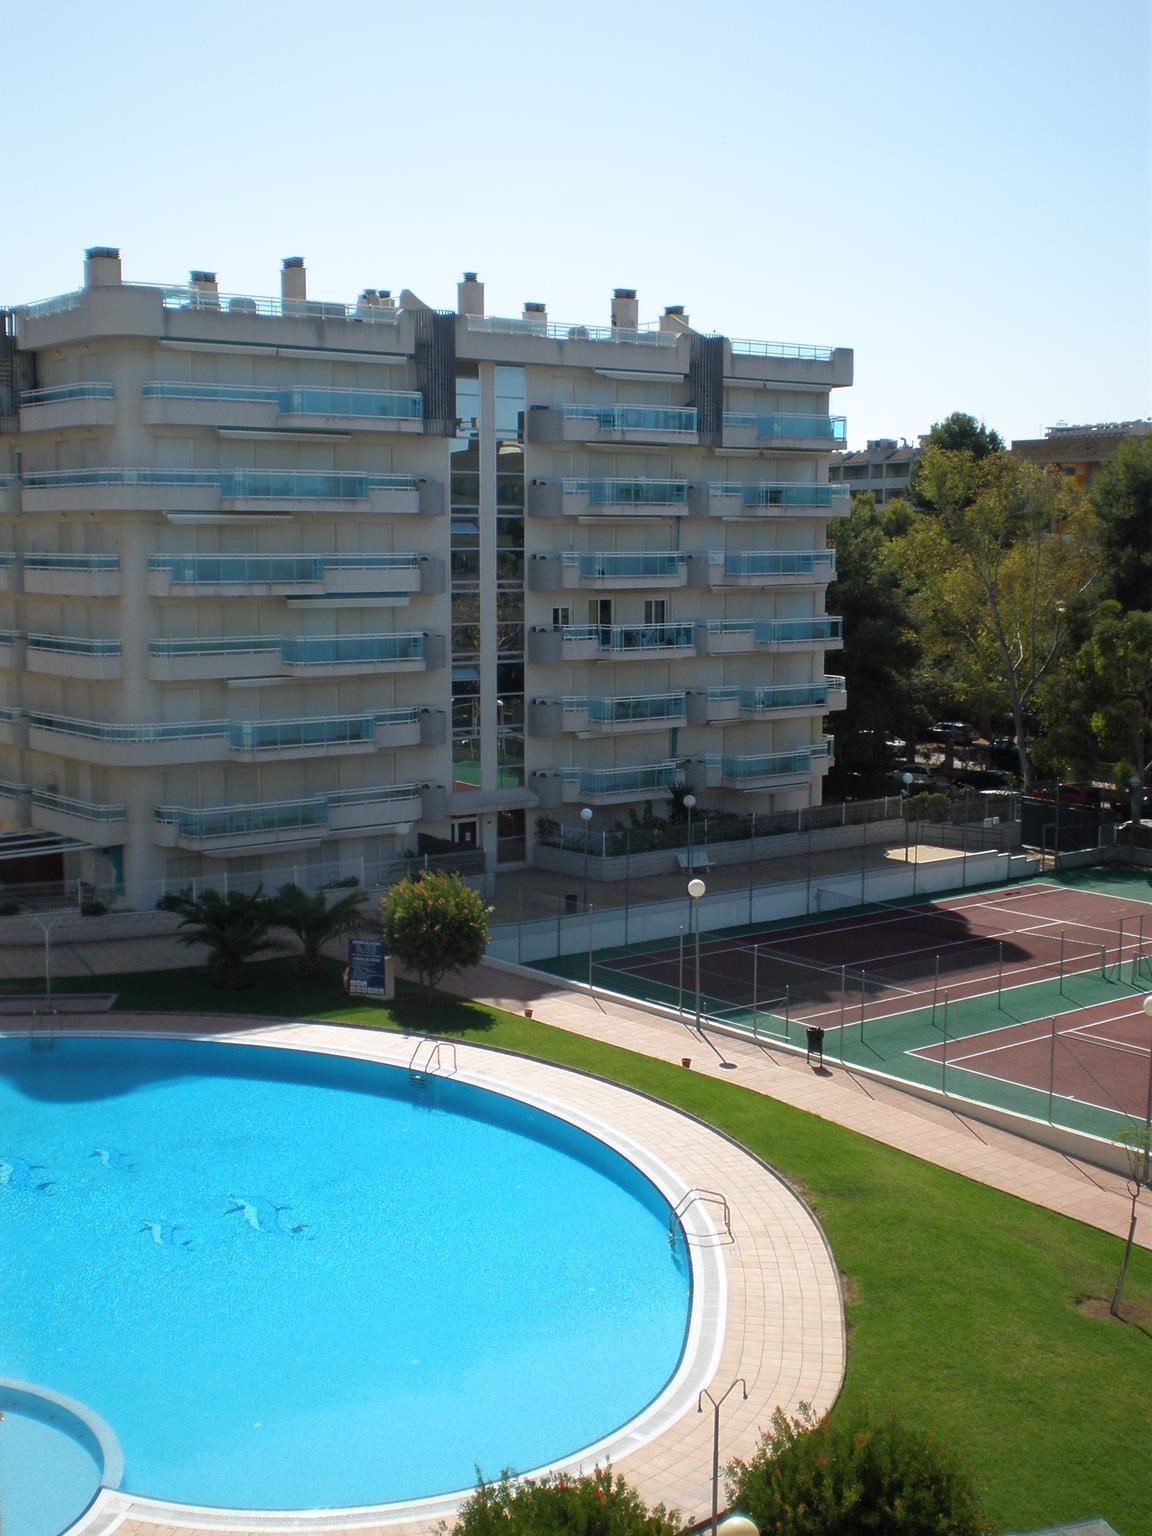 Ferienwohnung mit Tennisplatz und Außenpool (337882), Salou, Costa Dorada, Katalonien, Spanien, Bild 1